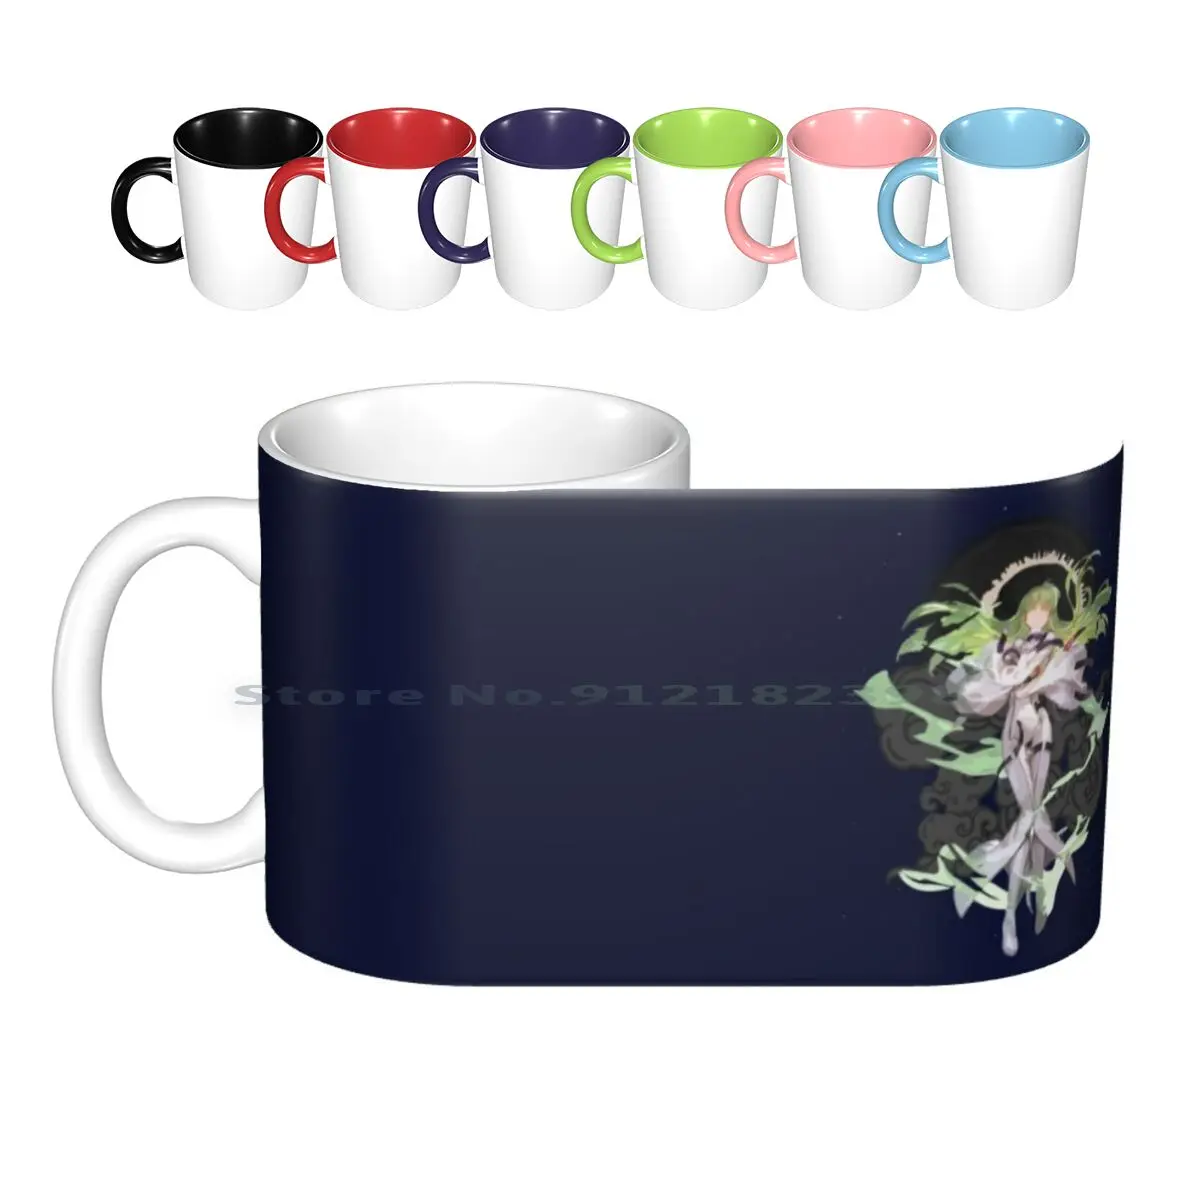 

Керамические кружки C.c-Code Geass, кофейные чашки, Кружка для молока и чая, кружка Geass Anime Geass Lelouch Zero, манга, код C, Британия C2, Cc код